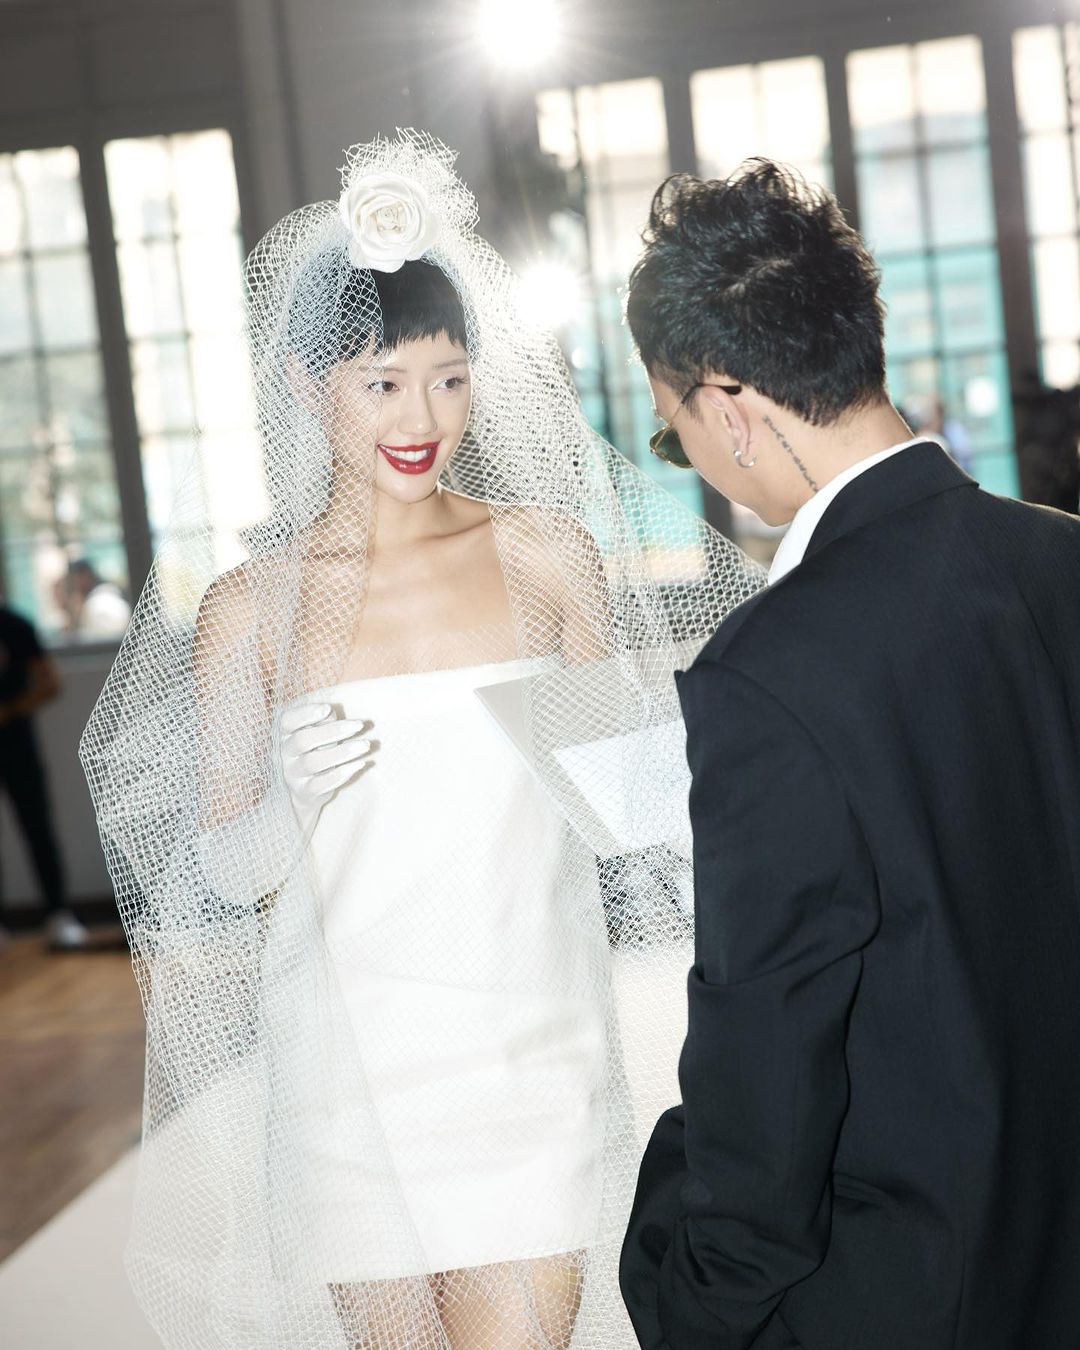 Thanh Hằng: 'Tôi không nghĩ có ngày được mặc váy cưới' - VnExpress Giải trí